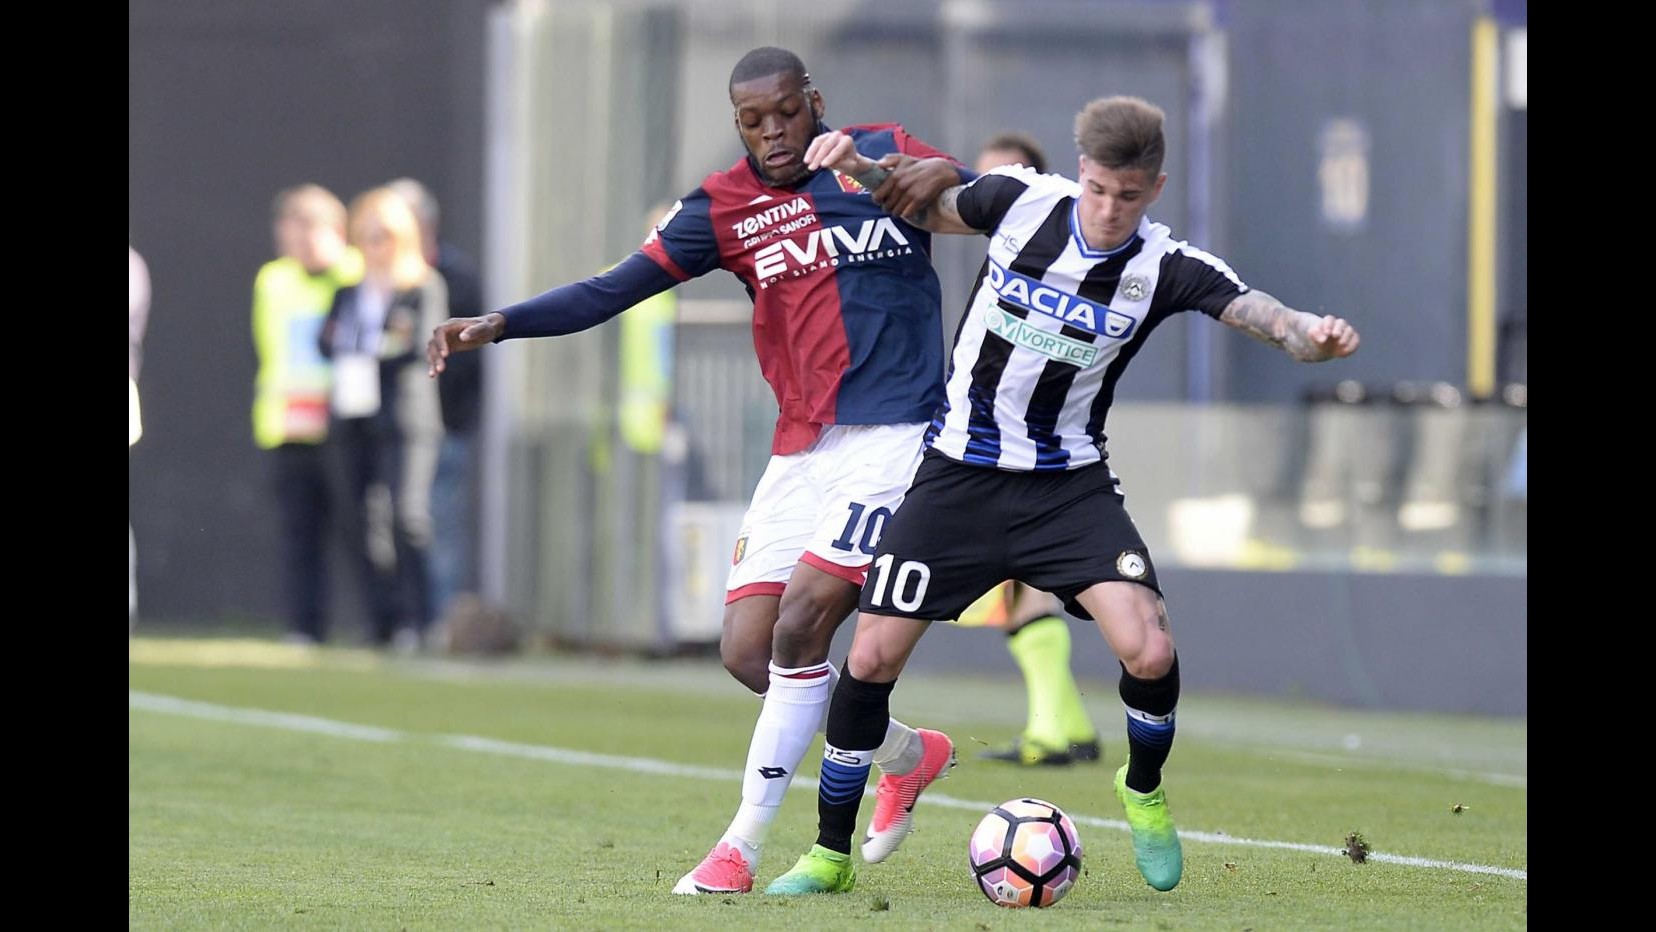 FOTO Serie A, tris dell’Udinese in casa: crisi nera per il Genoa